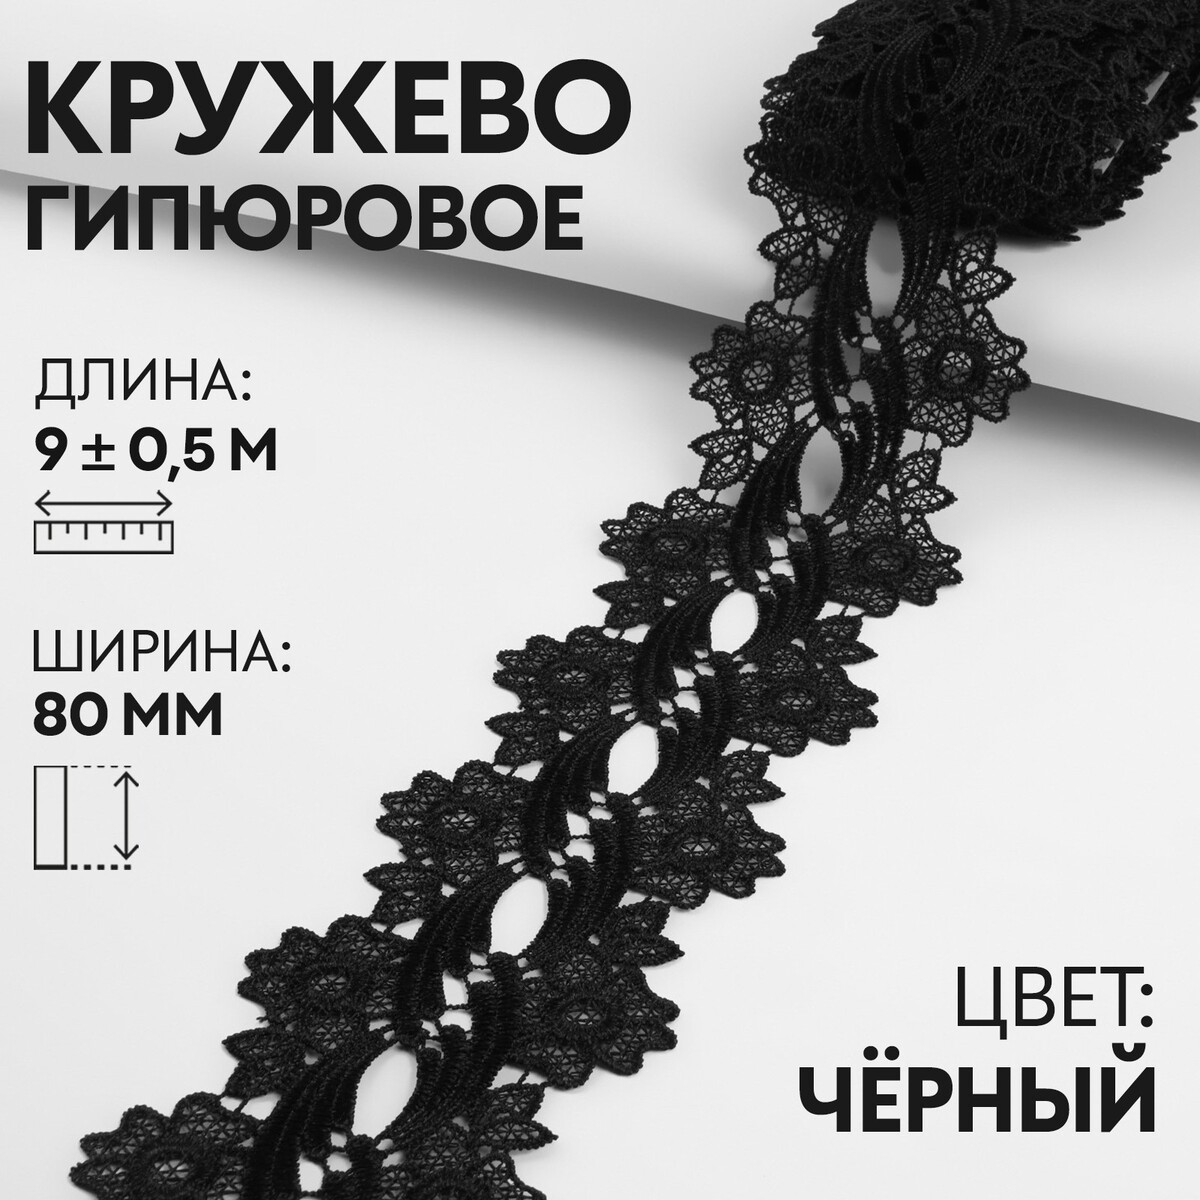 Кружево гипюровое, 80 мм × 9 ± 0,5 м, цвет черный